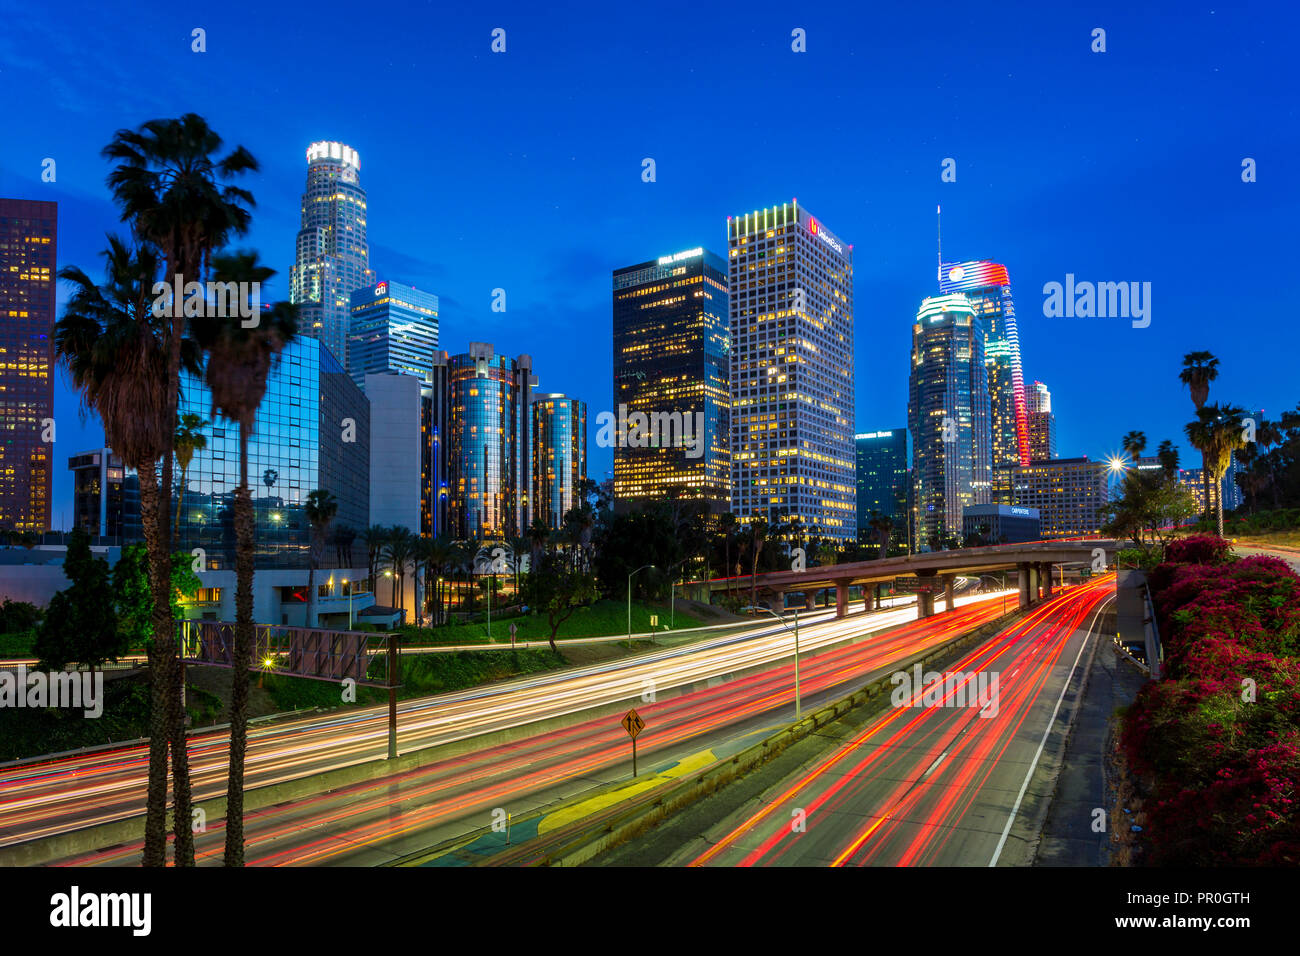 Downtown Financial District von Los Angeles City und belebten Autobahn bei Nacht, Los Angeles, Kalifornien, Vereinigte Staaten von Amerika, Nordamerika Stockfoto